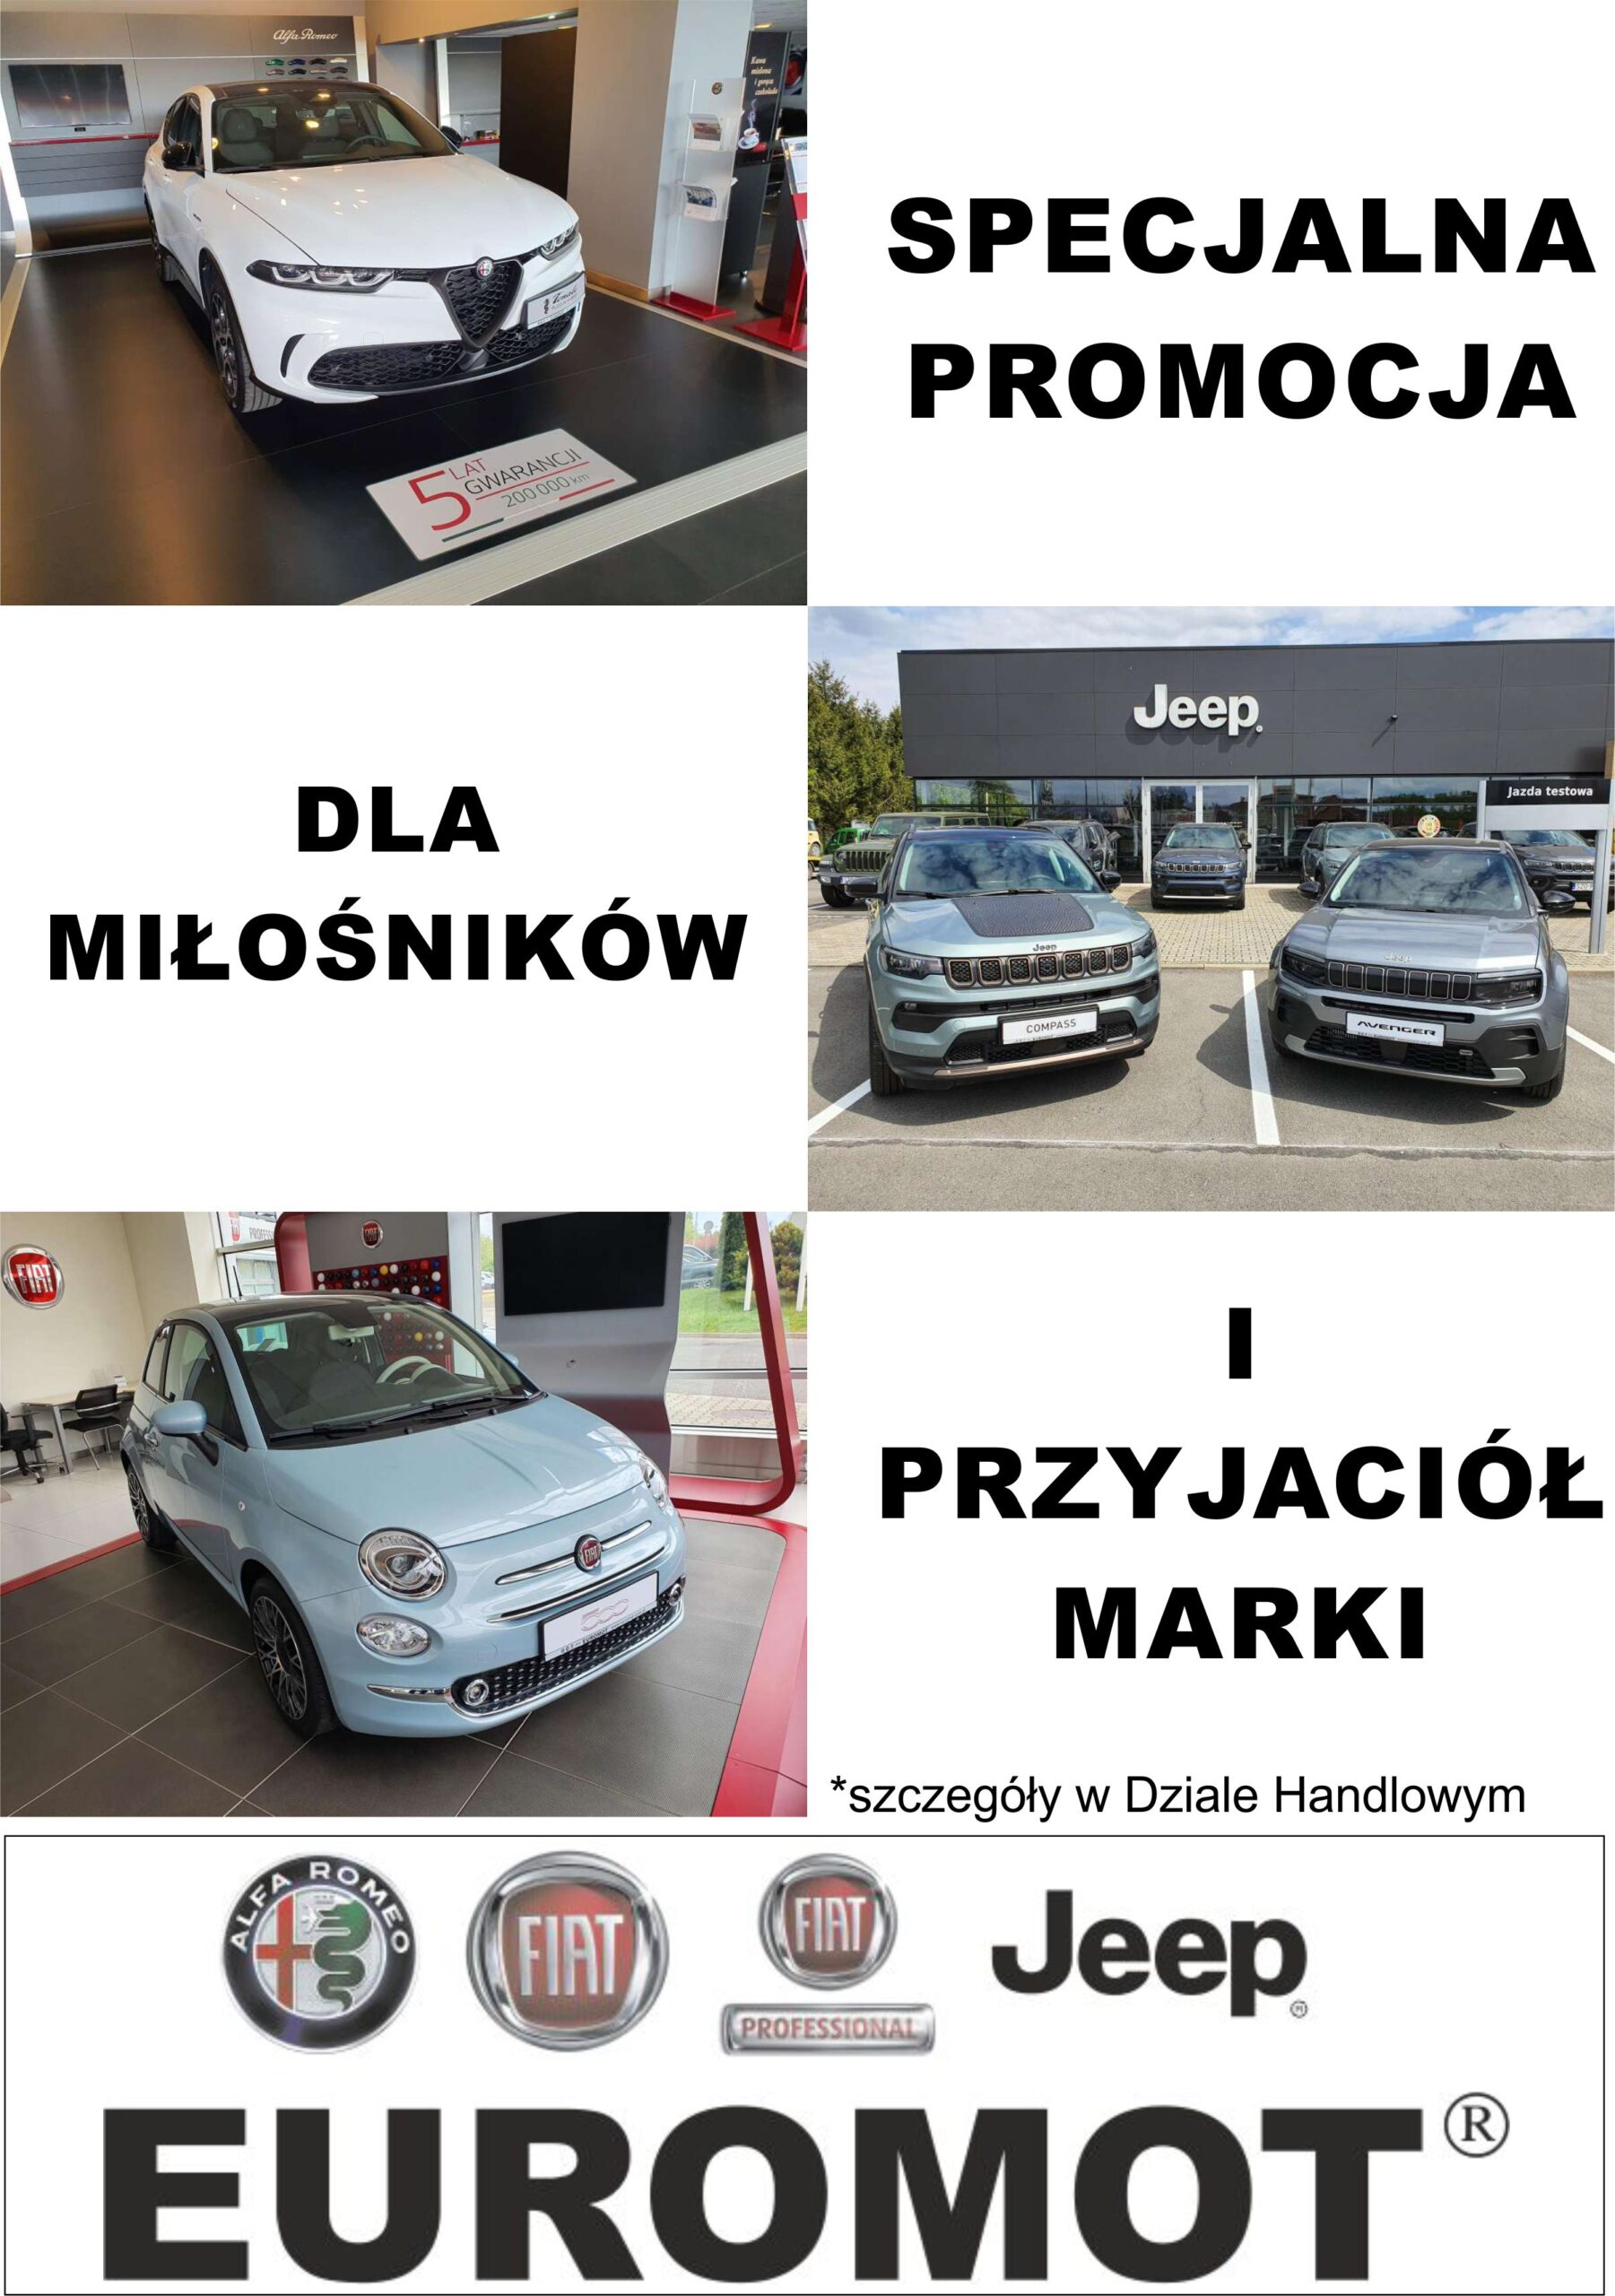 Ogłoszenie: Specjalna Promocja dla Miłośników i Przyjaciół Marki - Kup samochód Alfa Romeo, Fiat, Jeep z Niesamowitymi Korzyściami!